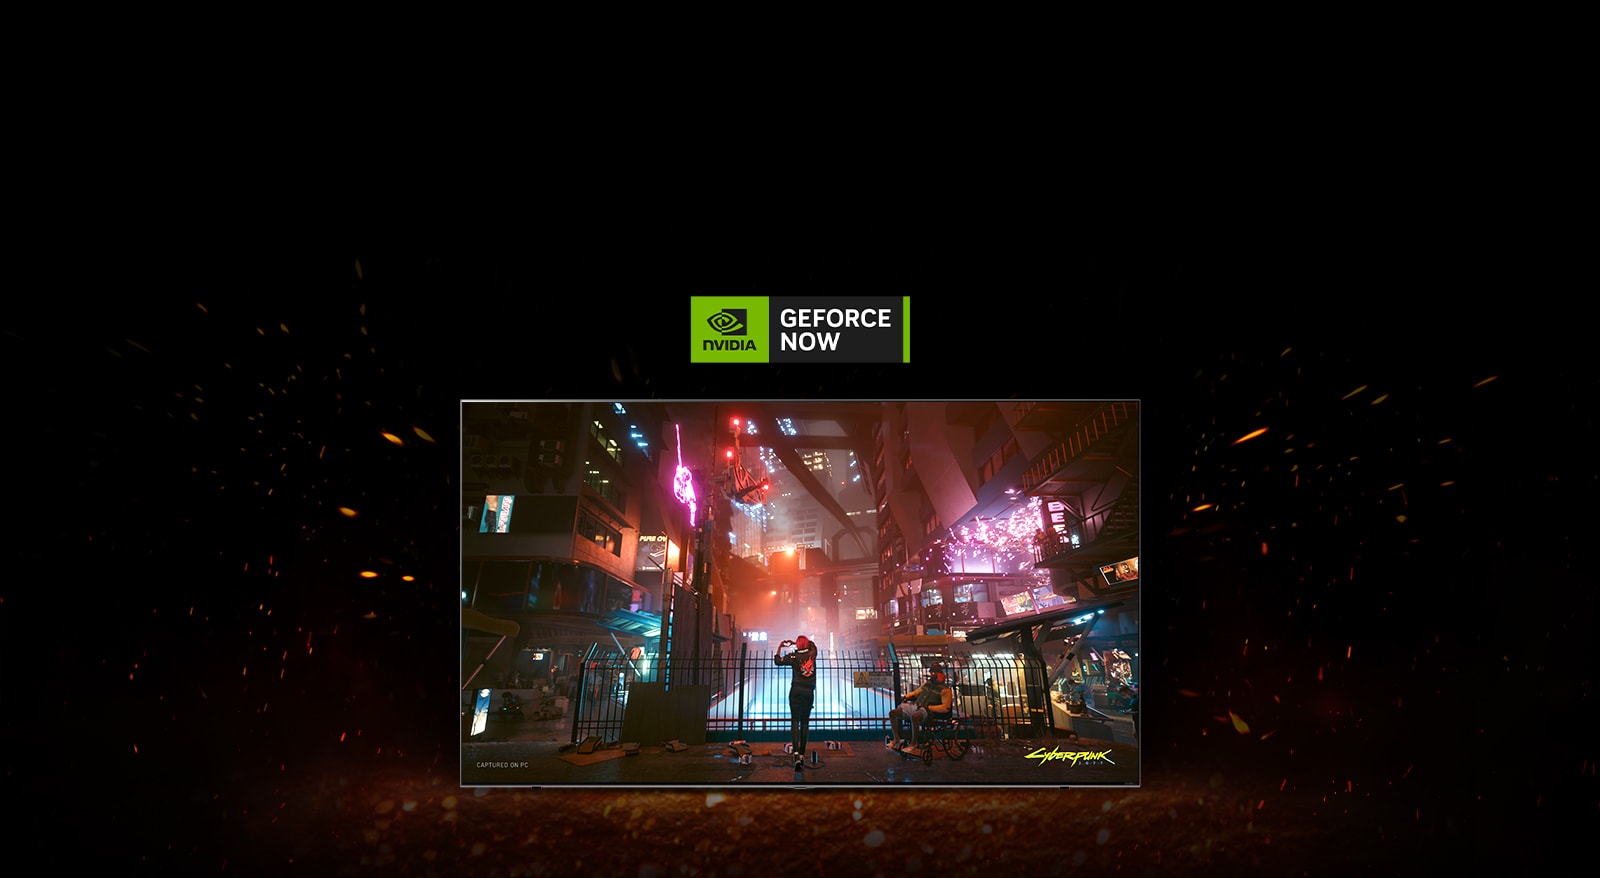 Plamen svjetluca oko TV-a i možete vidjeti na njemu zaslon igre Cyberpunk. Novi logo za GeForce Now nalazi se pri vrhu TV-a.